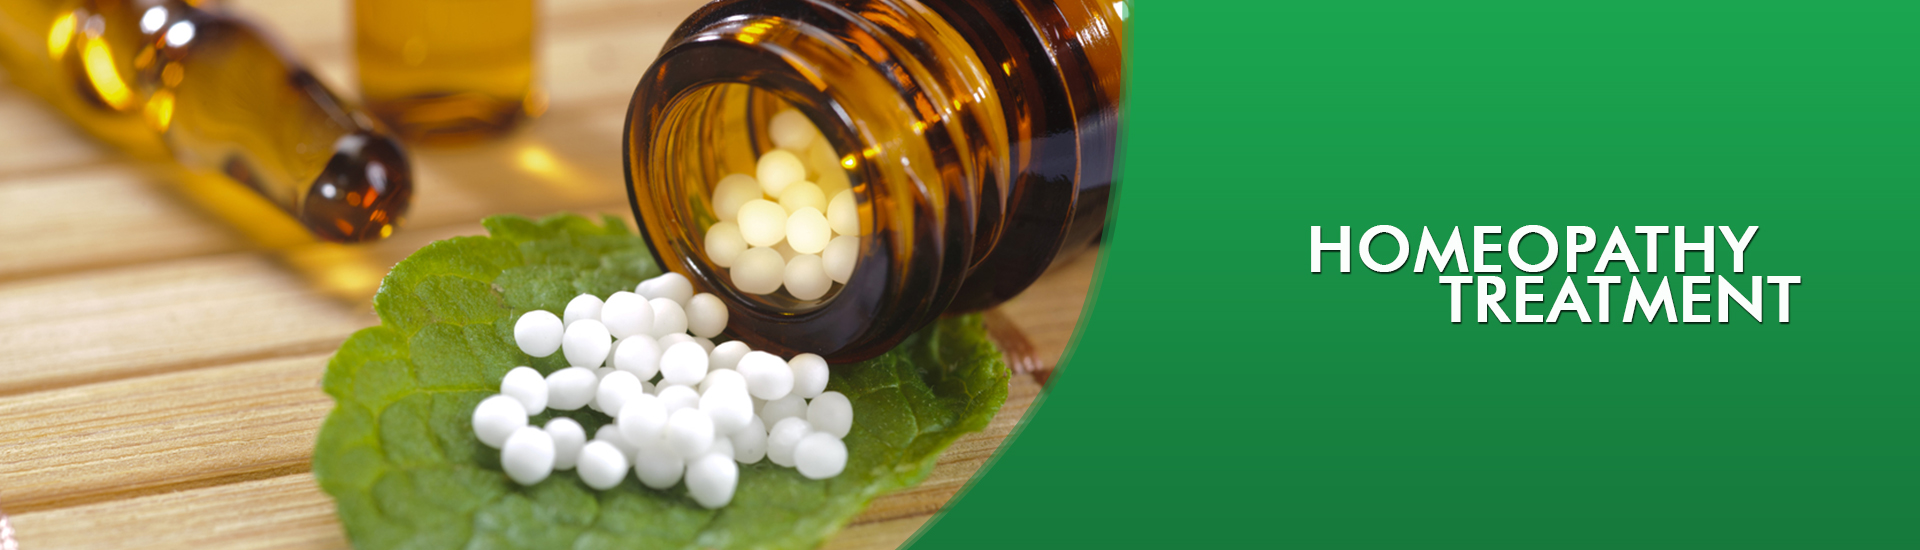 Homeopathy Treatment in Chennai | Chennai Natural Treatment Clinic